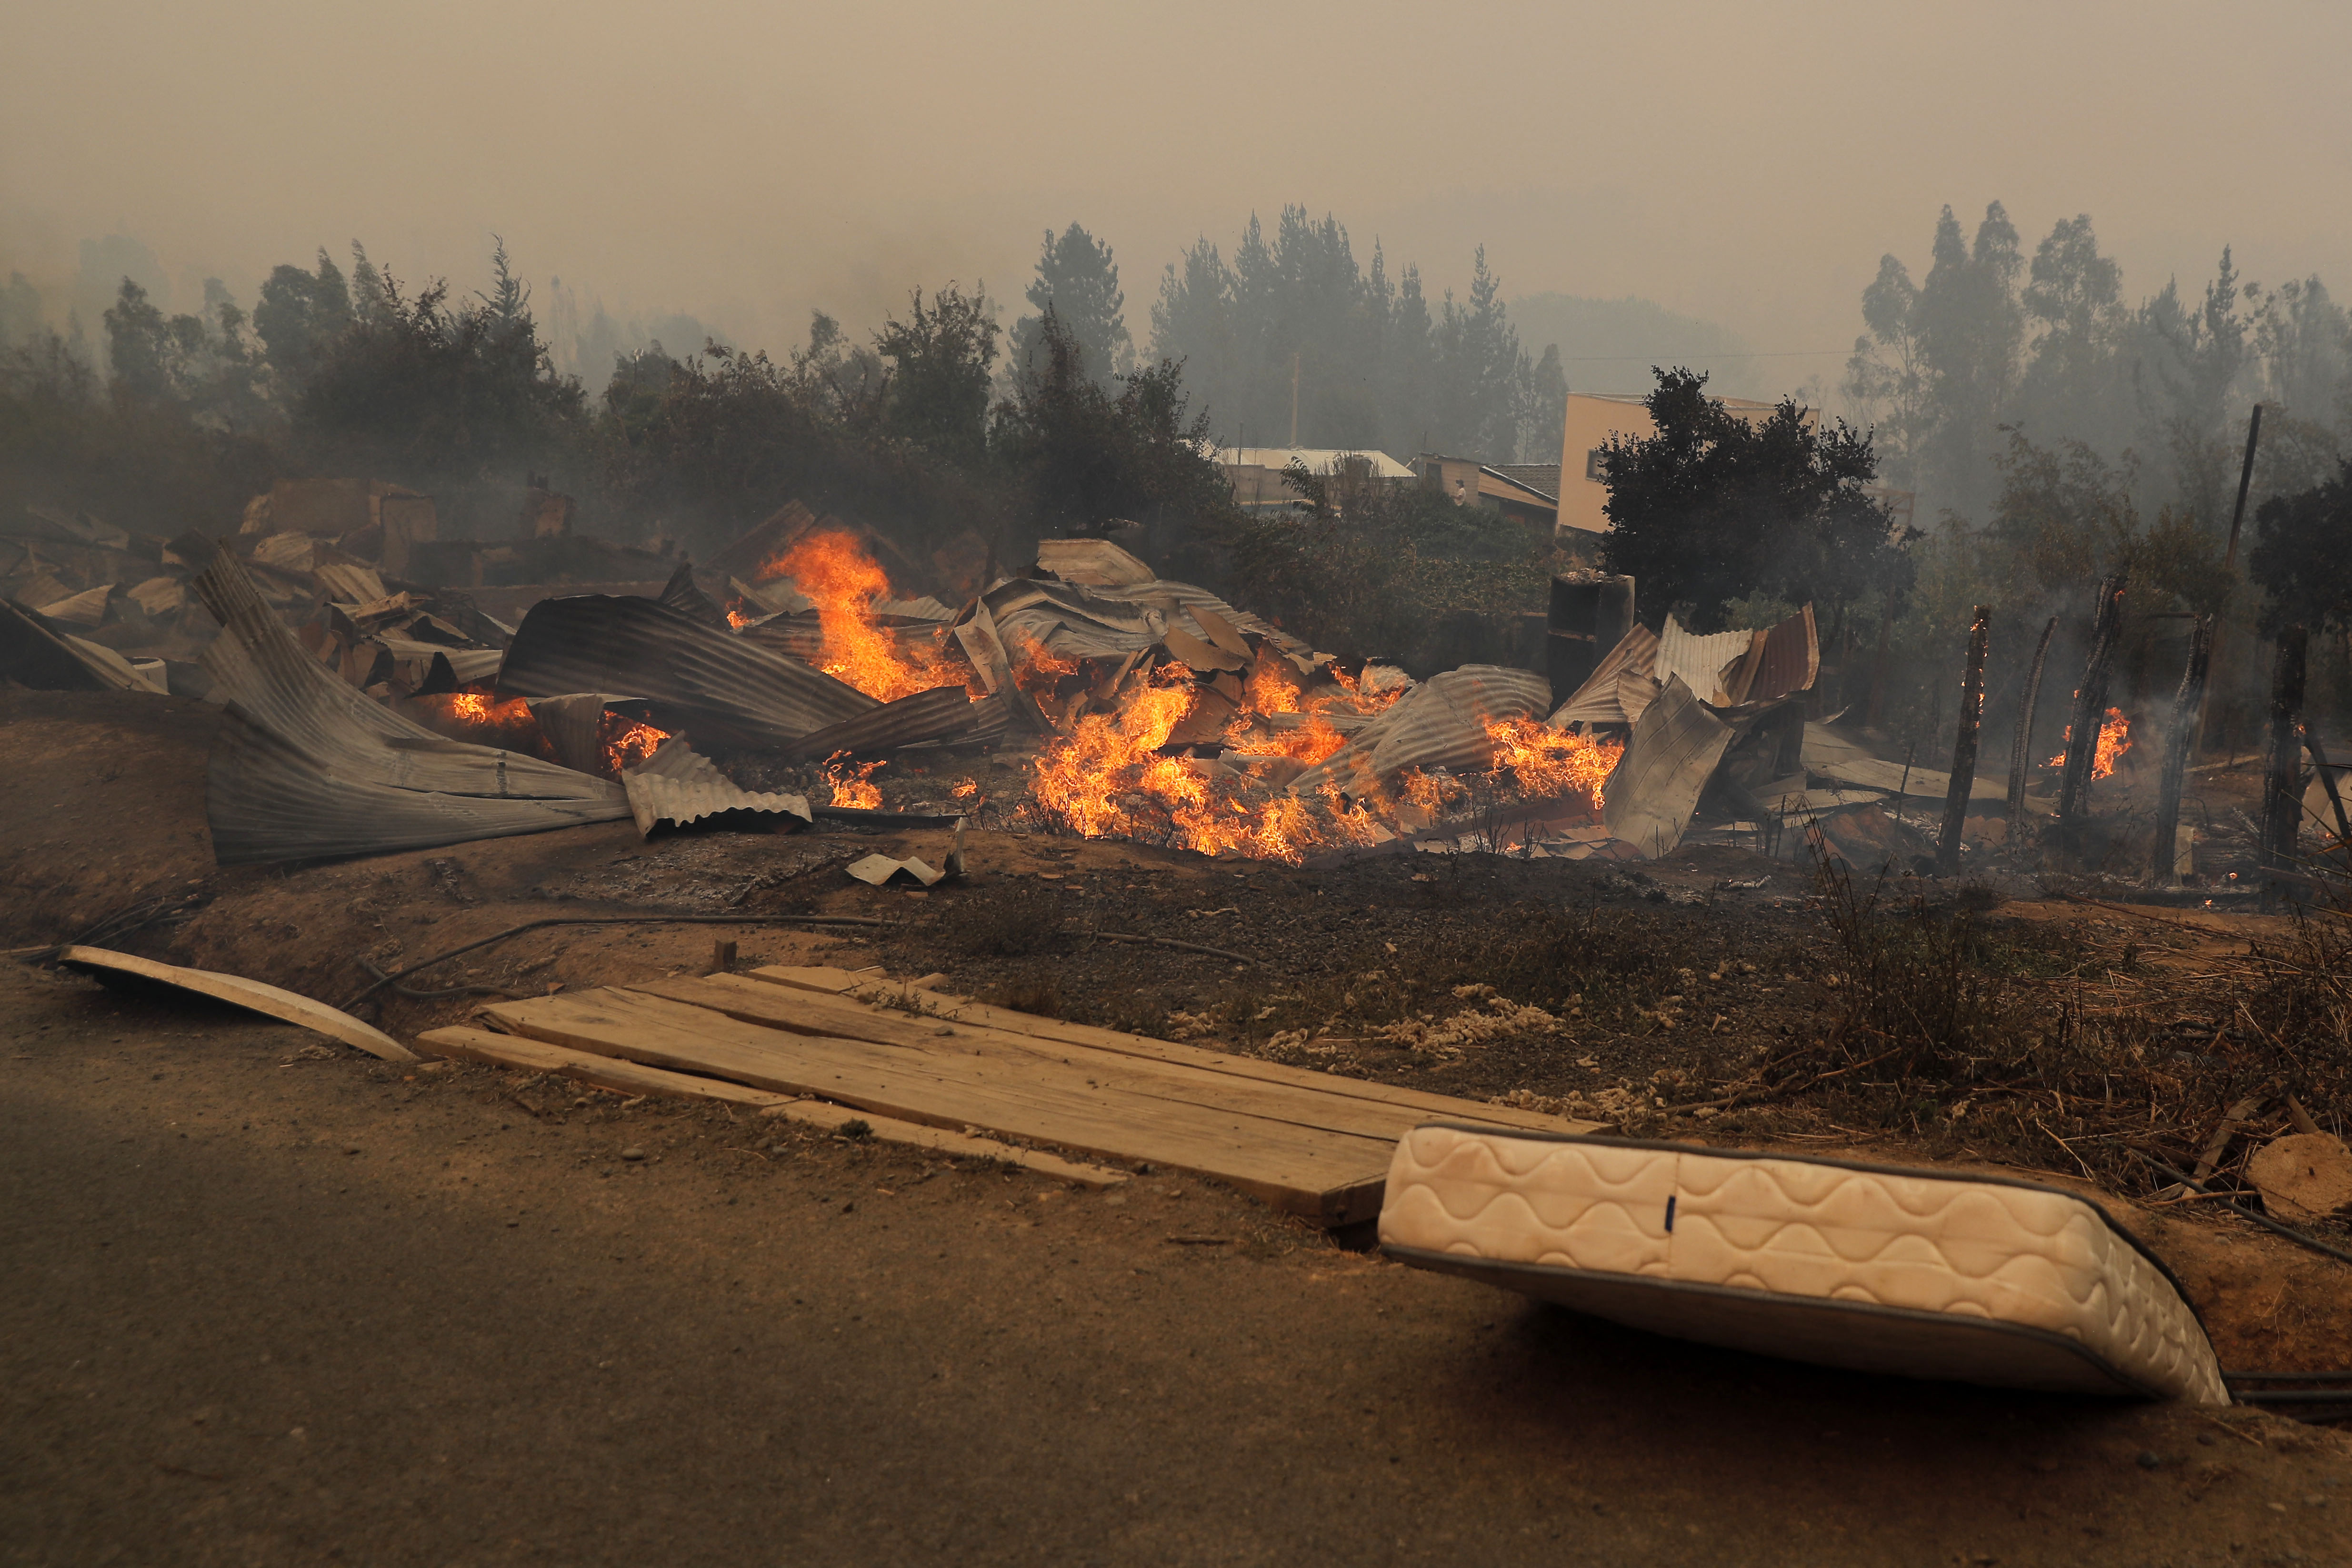 Incendios forestales en Chile: al menos 13 muertos y un helicóptero caído